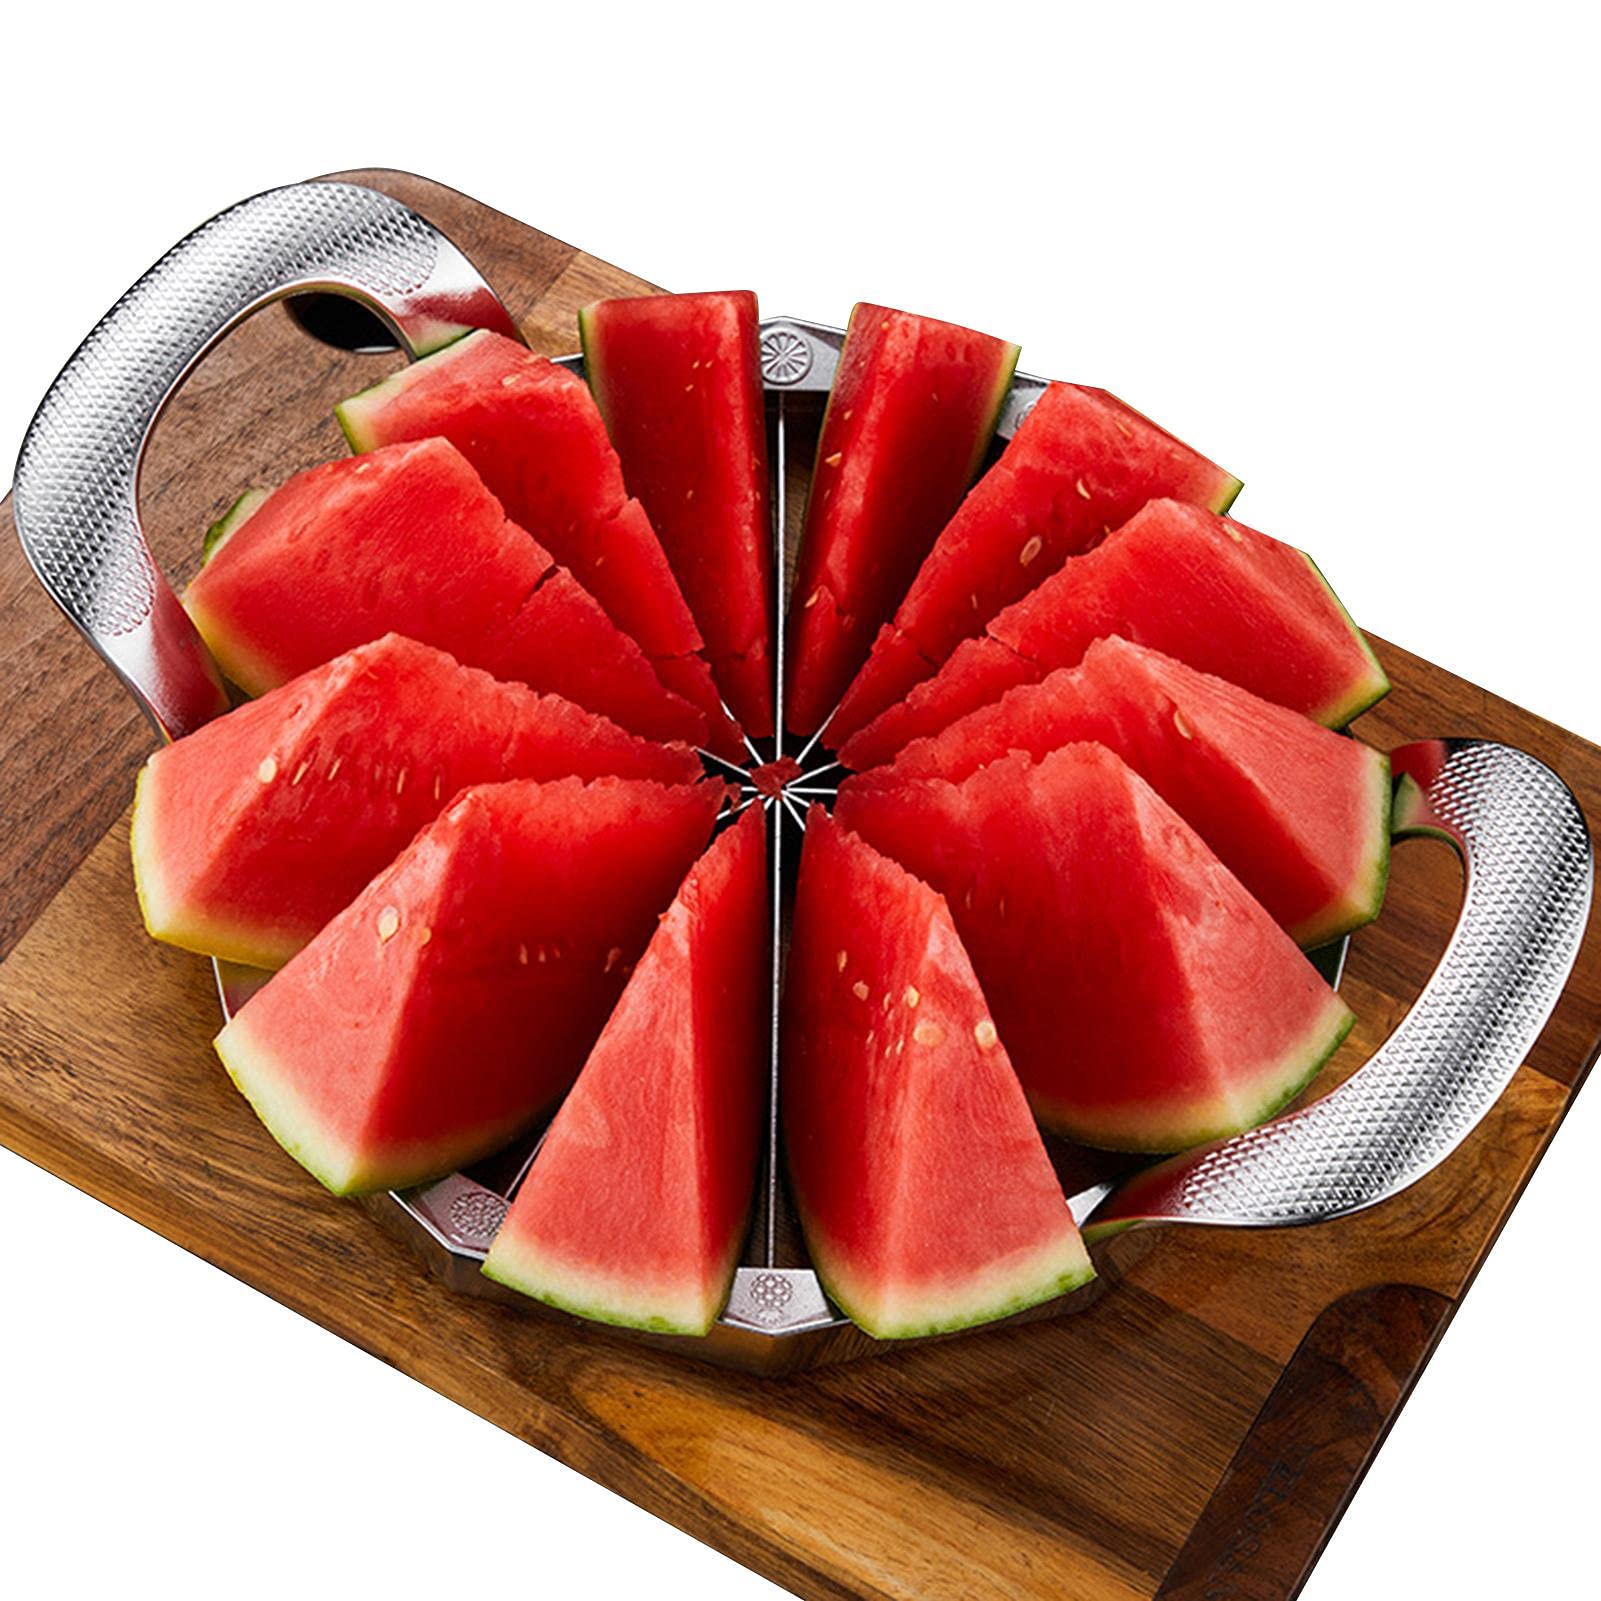 Nrkin Wassermelonen Schneider Watermelon Slicer, Apfelschneider Watermelon Schneide Edelstahl Obst Schneiden Slicer More Simply Get 12 Slices Küche Praktische Werkzeuge